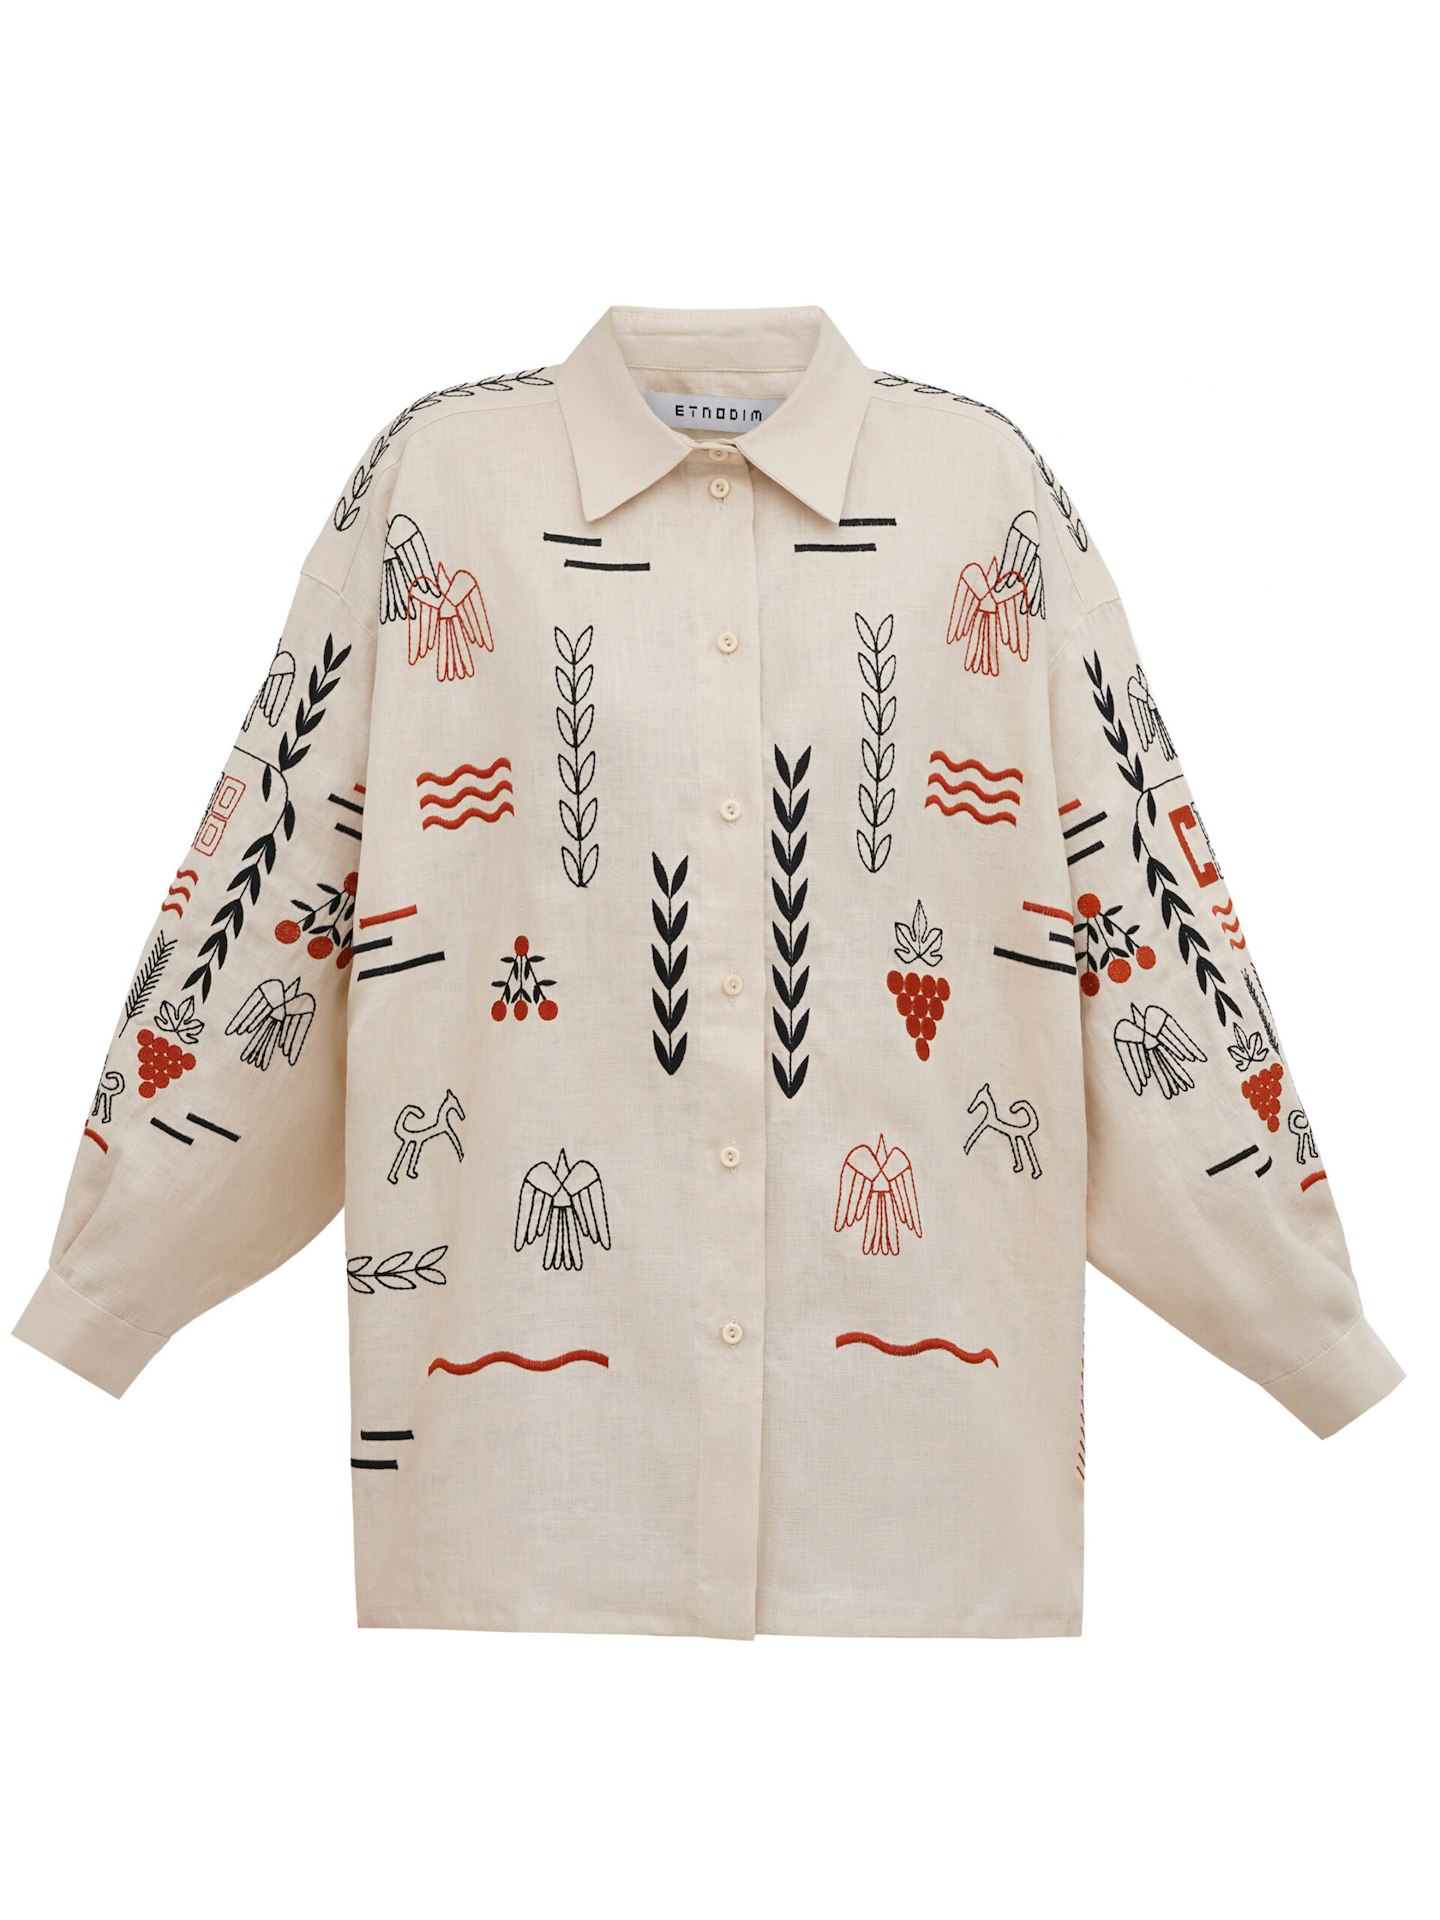 Etnodim, Beige Linen Embroidered Shirt